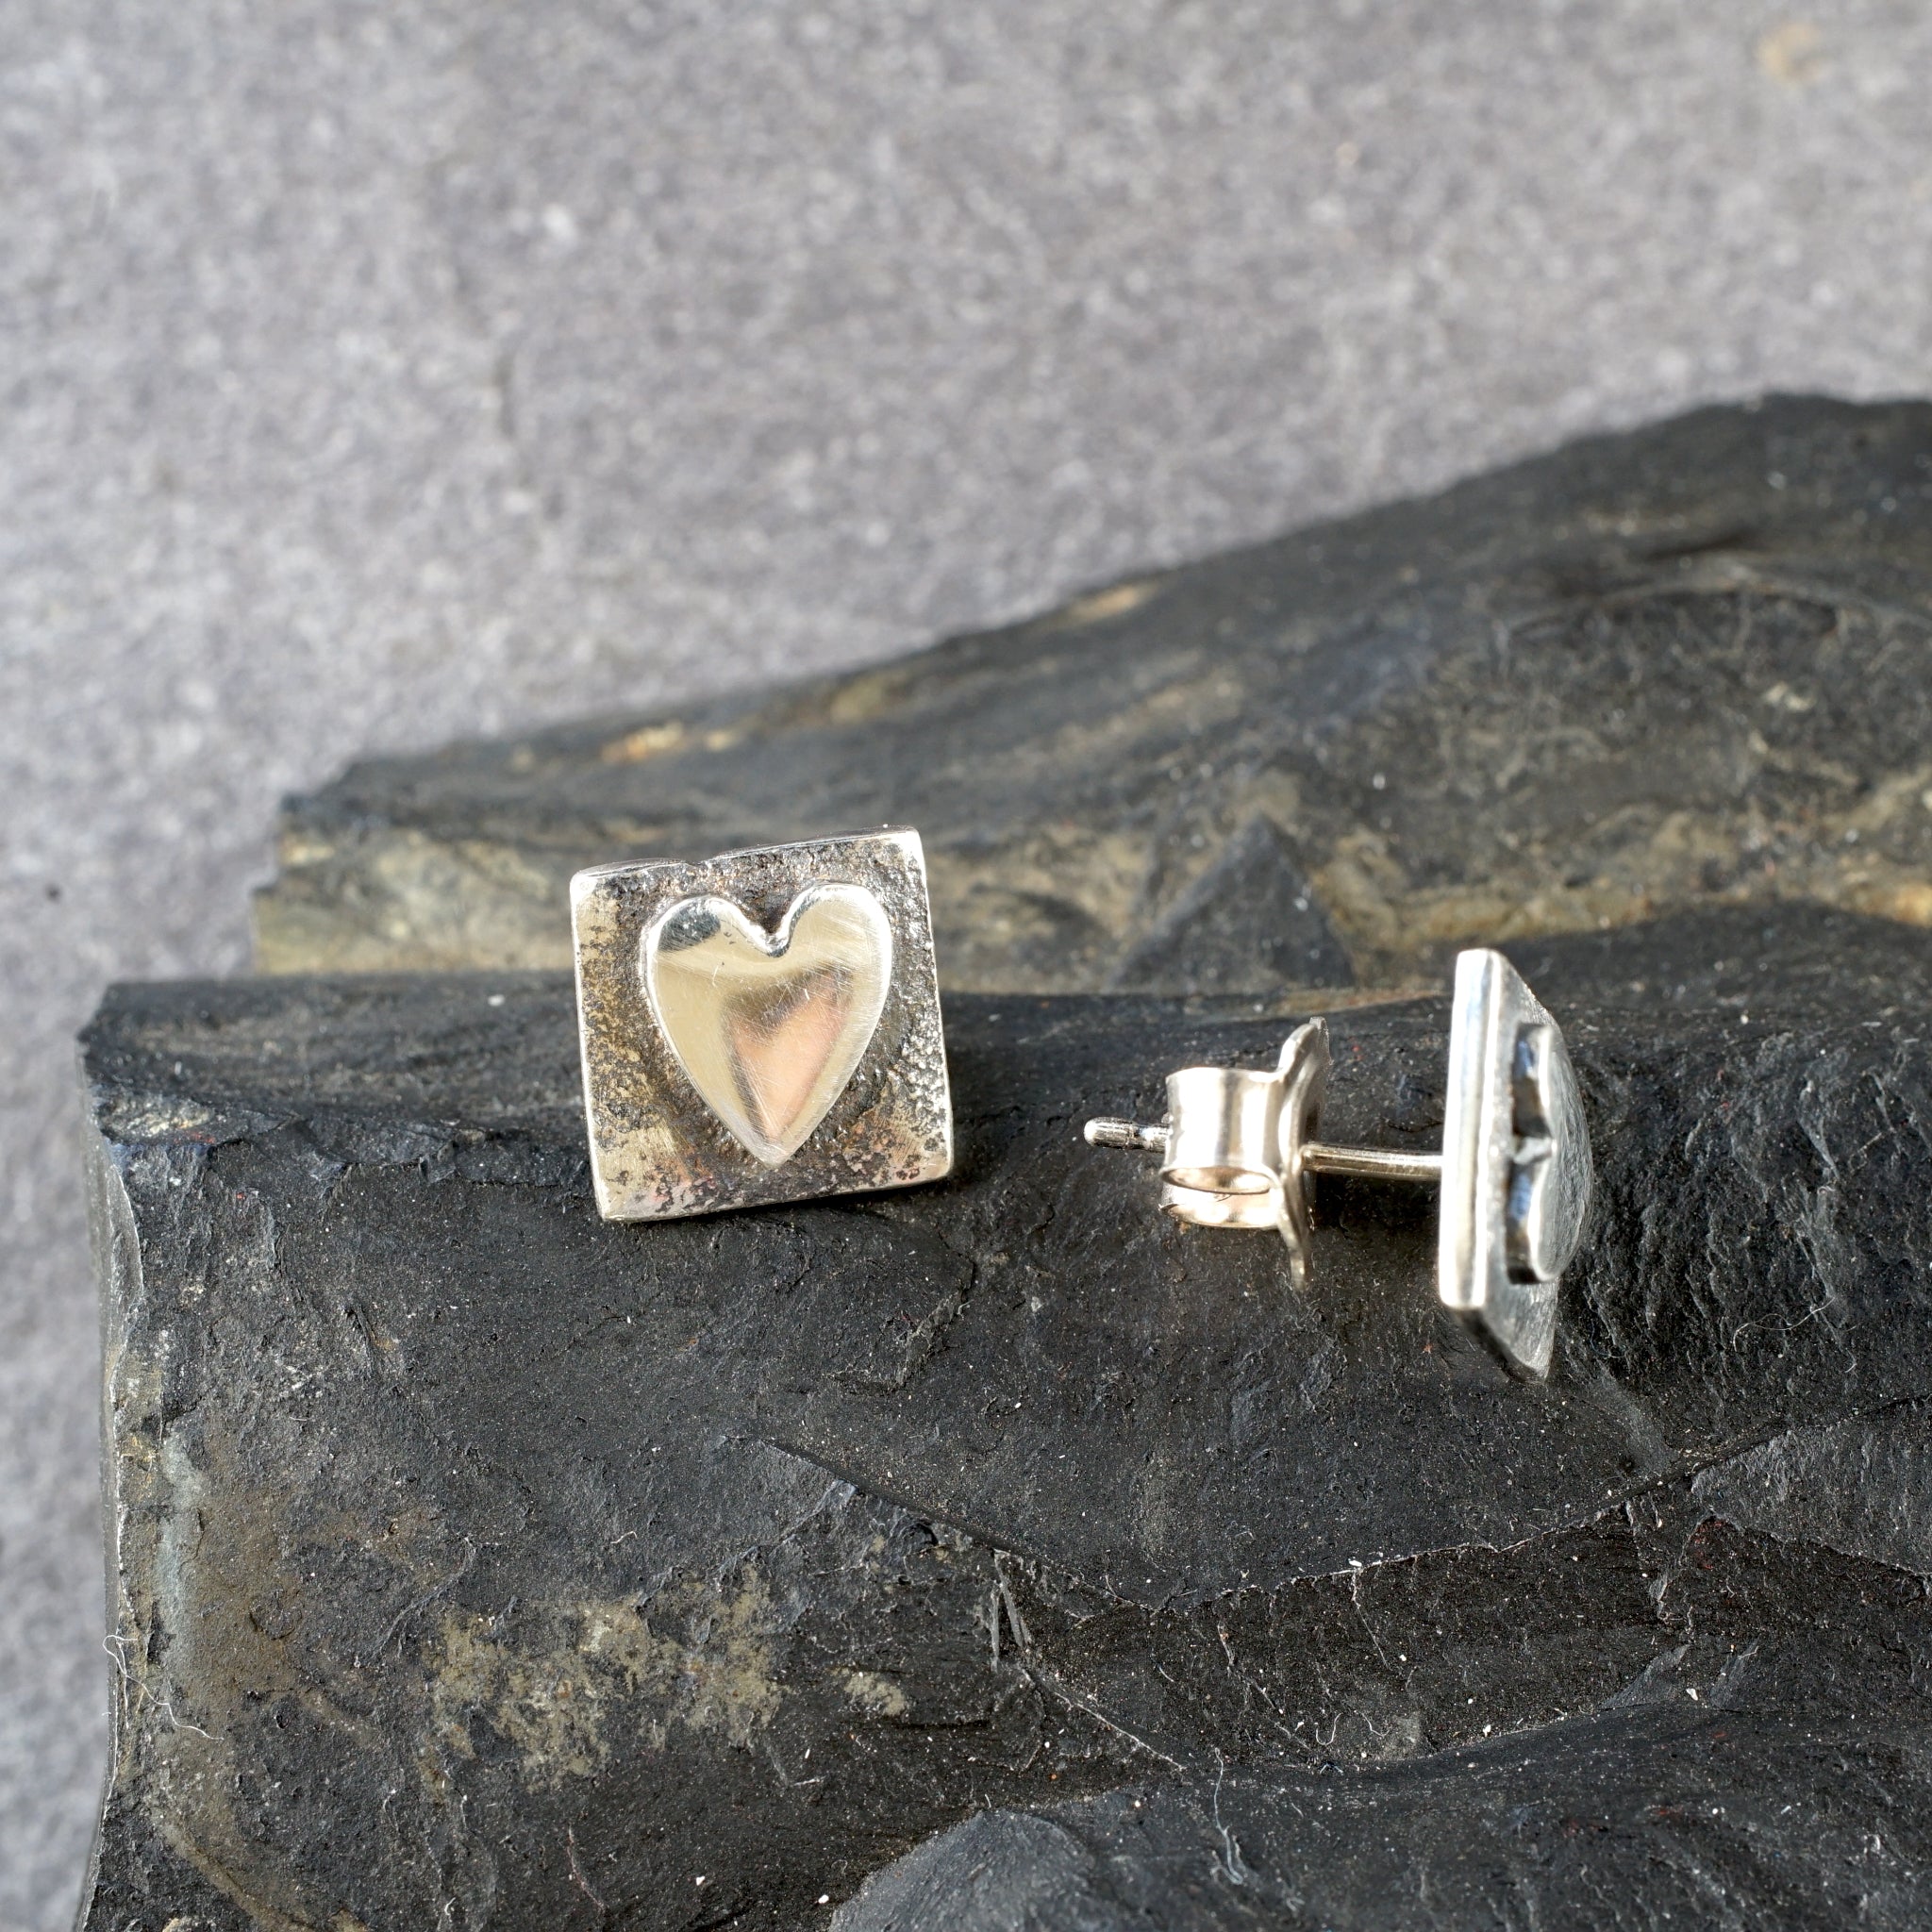 SH01SE Silver Heart Stud Earrings from Angela Kelly Jewellery Enniskillen Fermanagh